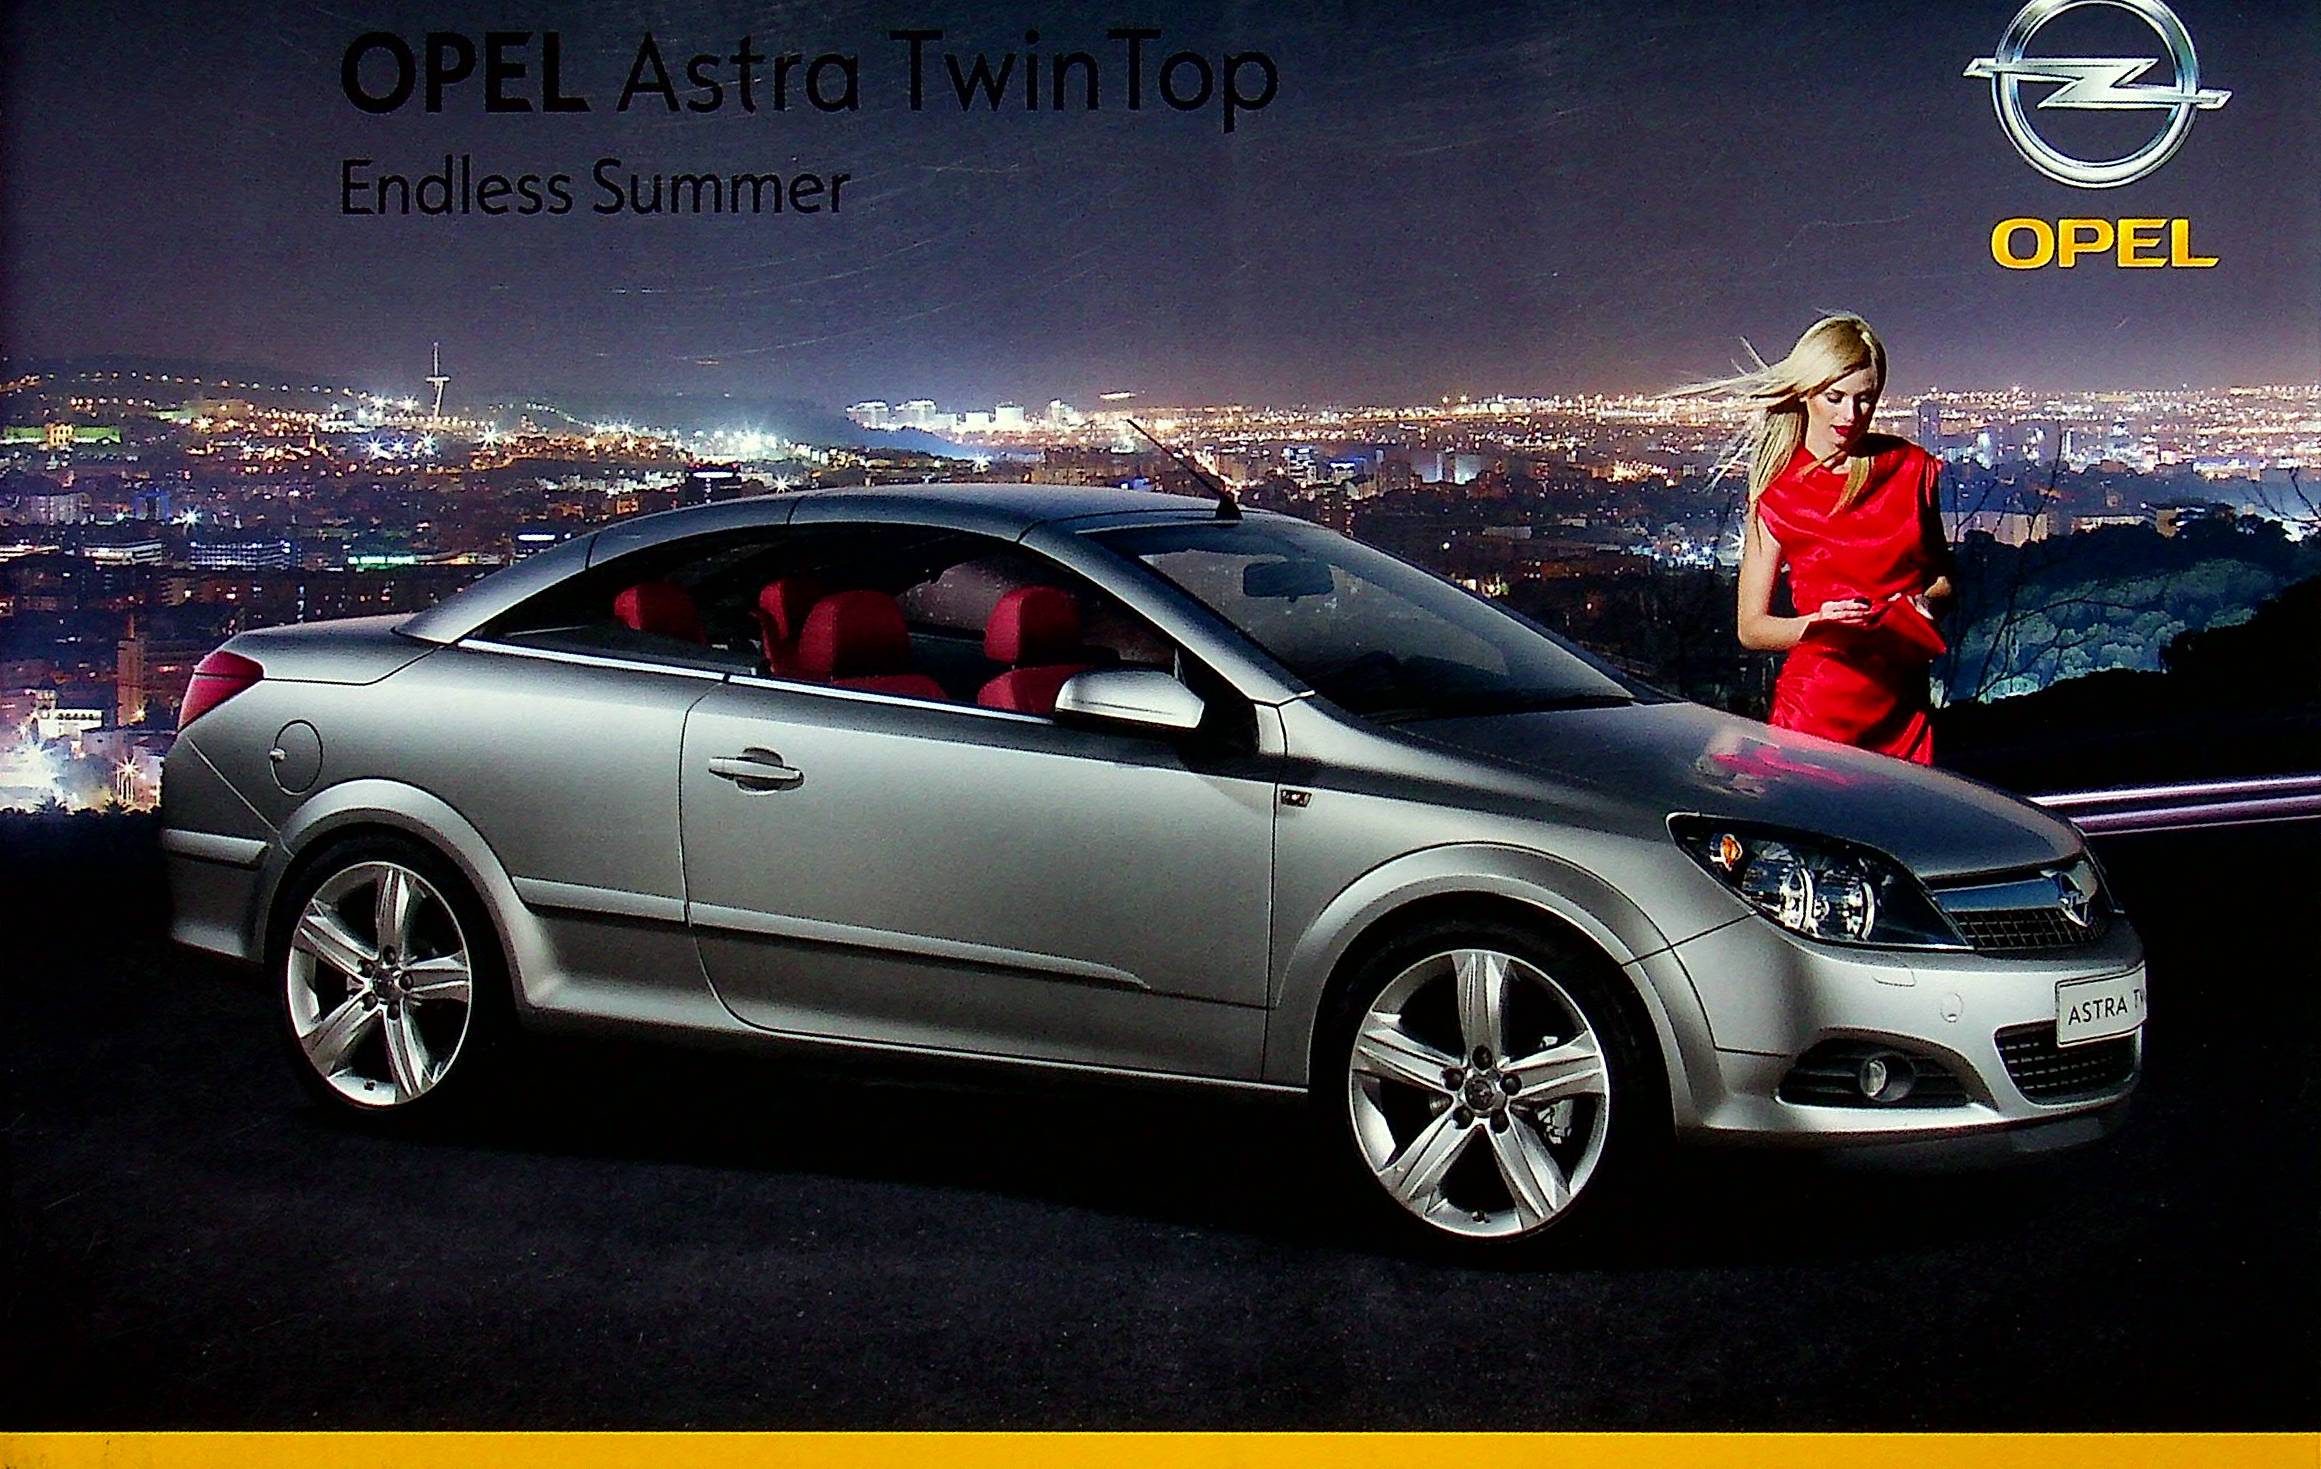 266595) Opel Astra TwinTop - Endless Summer - Prospekt 04/2008